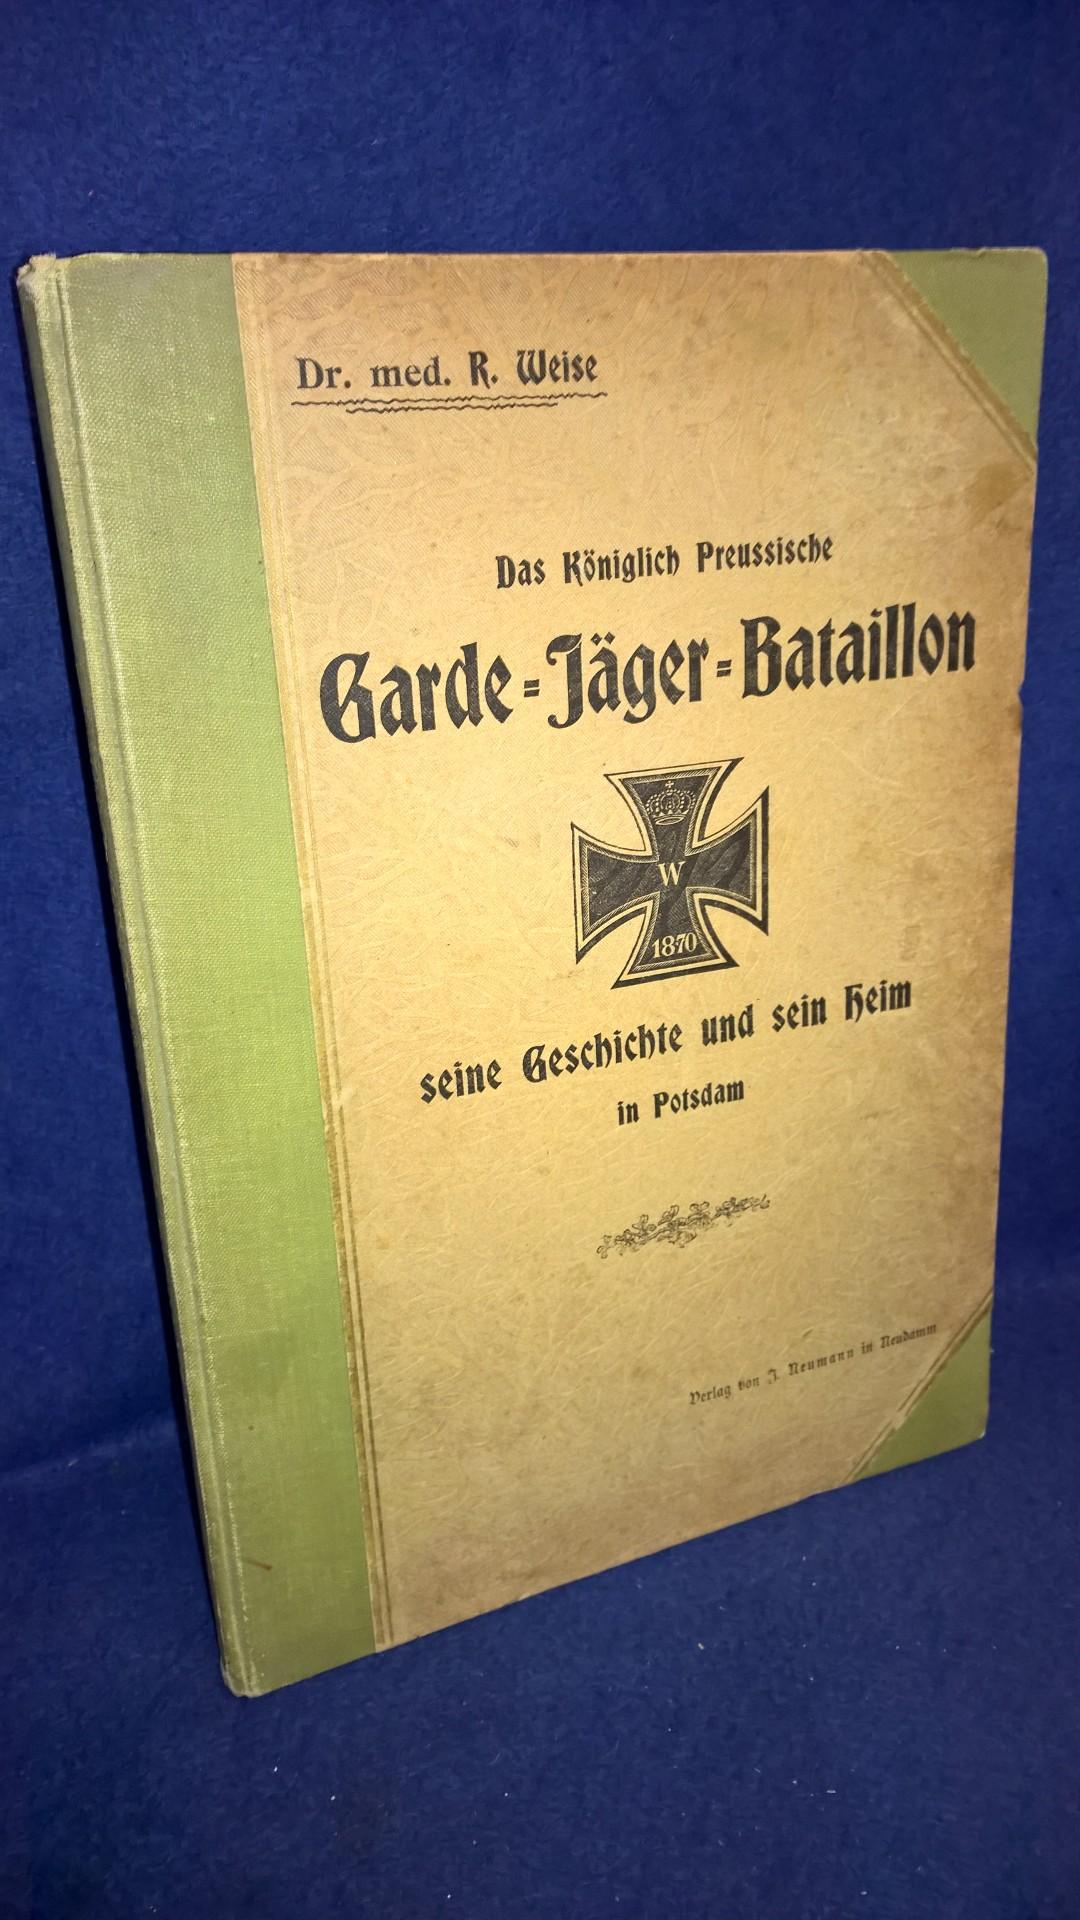 Das Königlich Preußische Garde - Jäger - Bataillon, seine Geschichte und sein Heim in Potsdam.